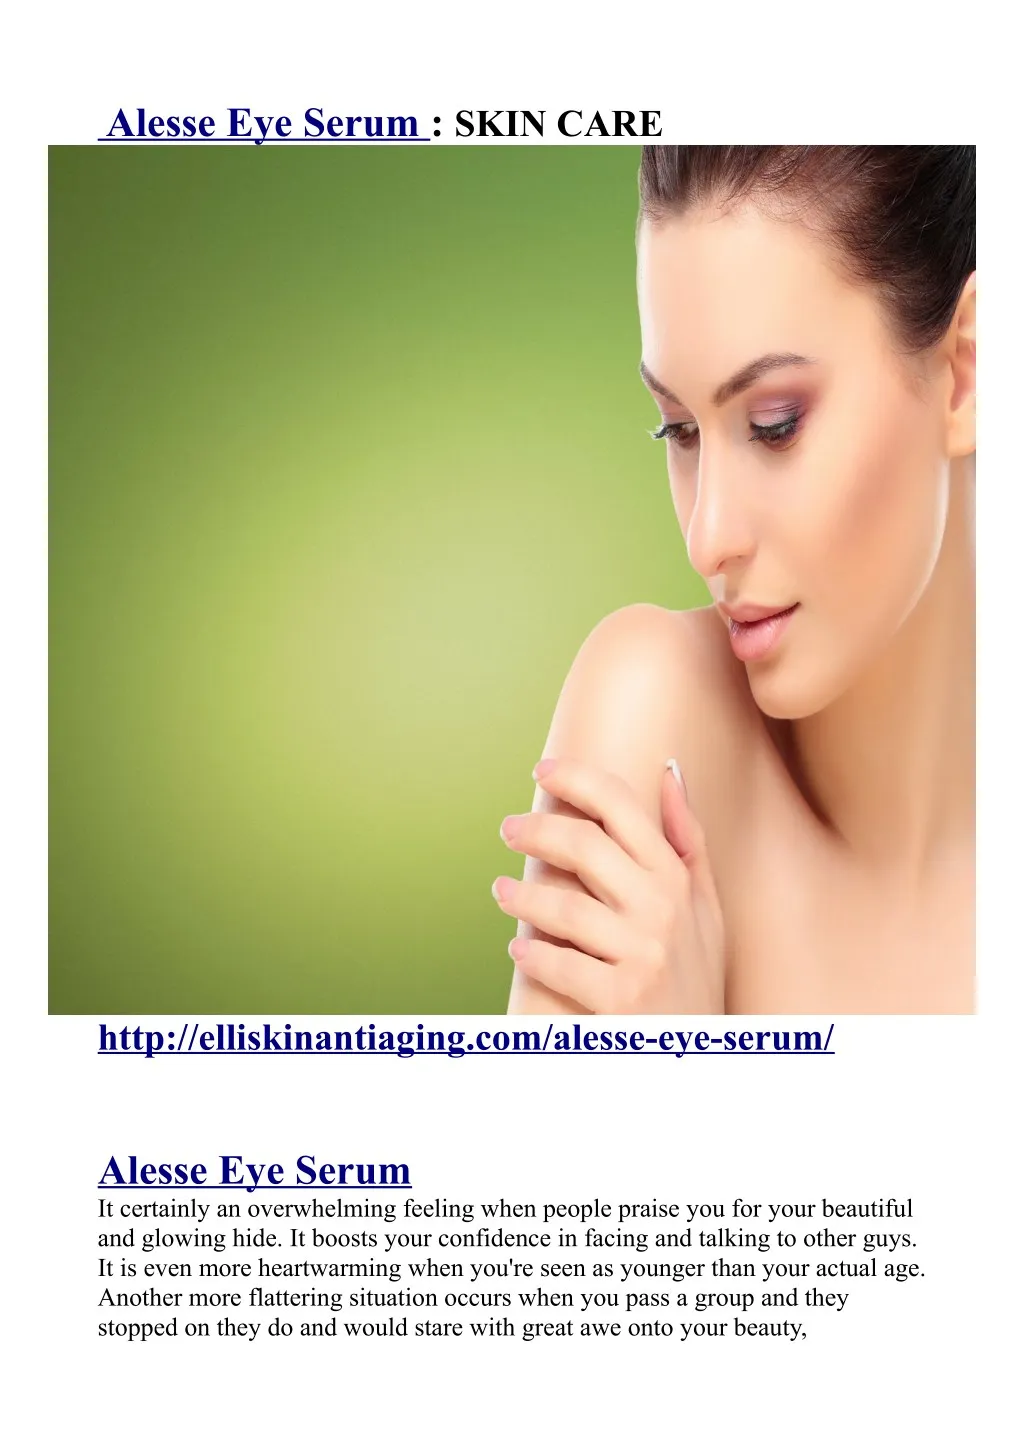 alesse eye serum skin care